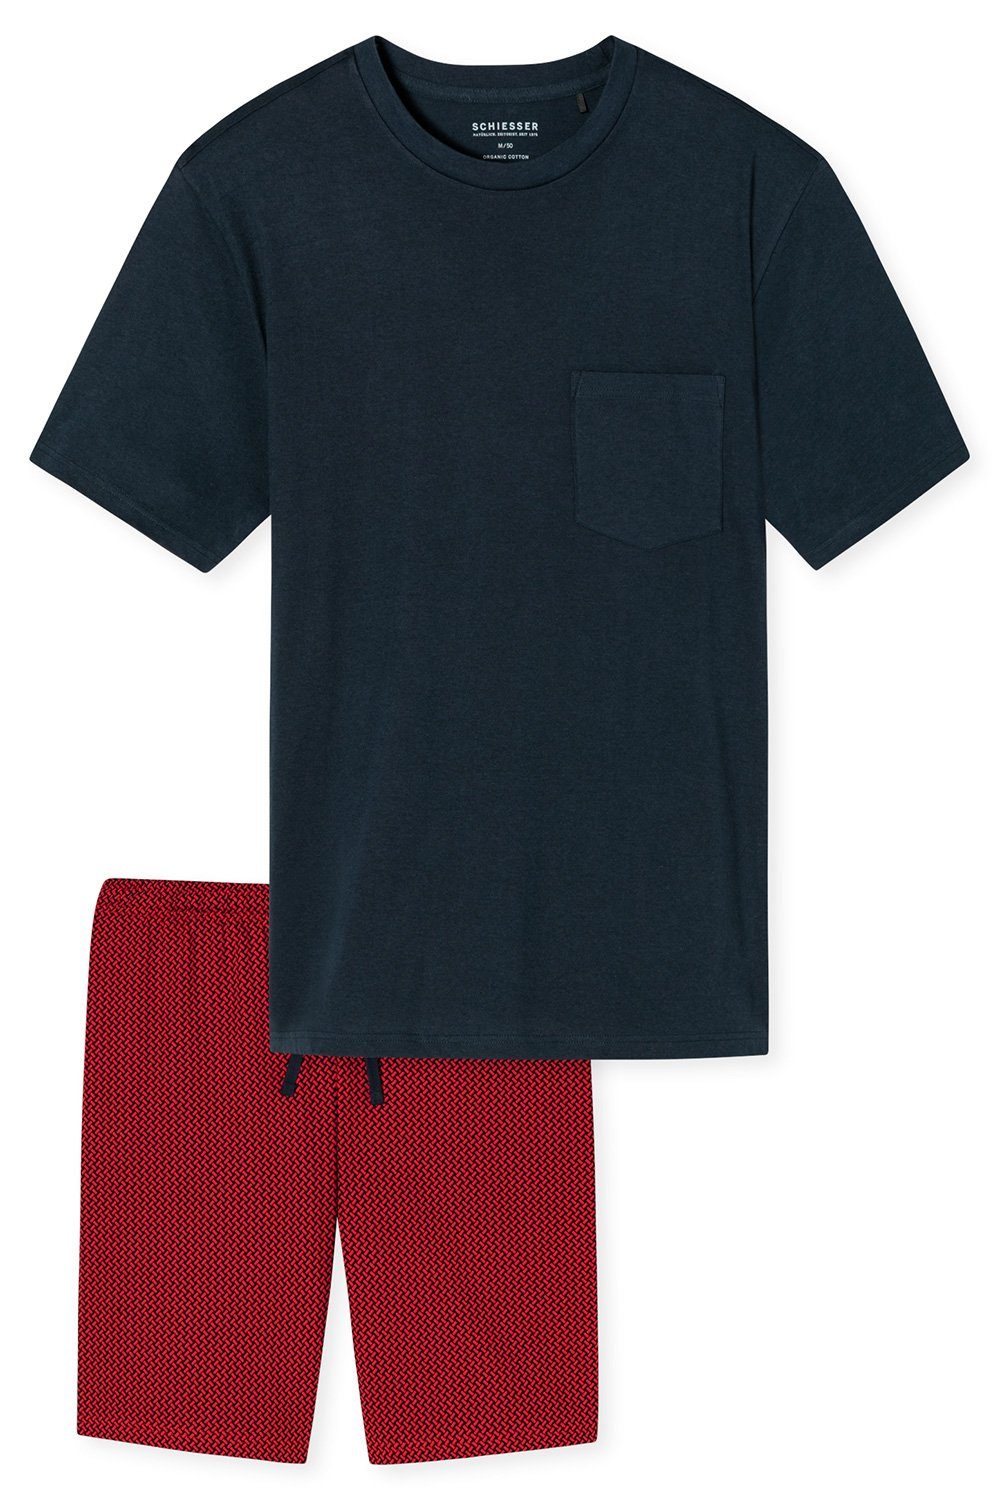 tlg) (803) Schiesser Baumwolle reiner aus Schlafanzug Set Kurz-Pyjama Shorty Herren dunkelblau (2